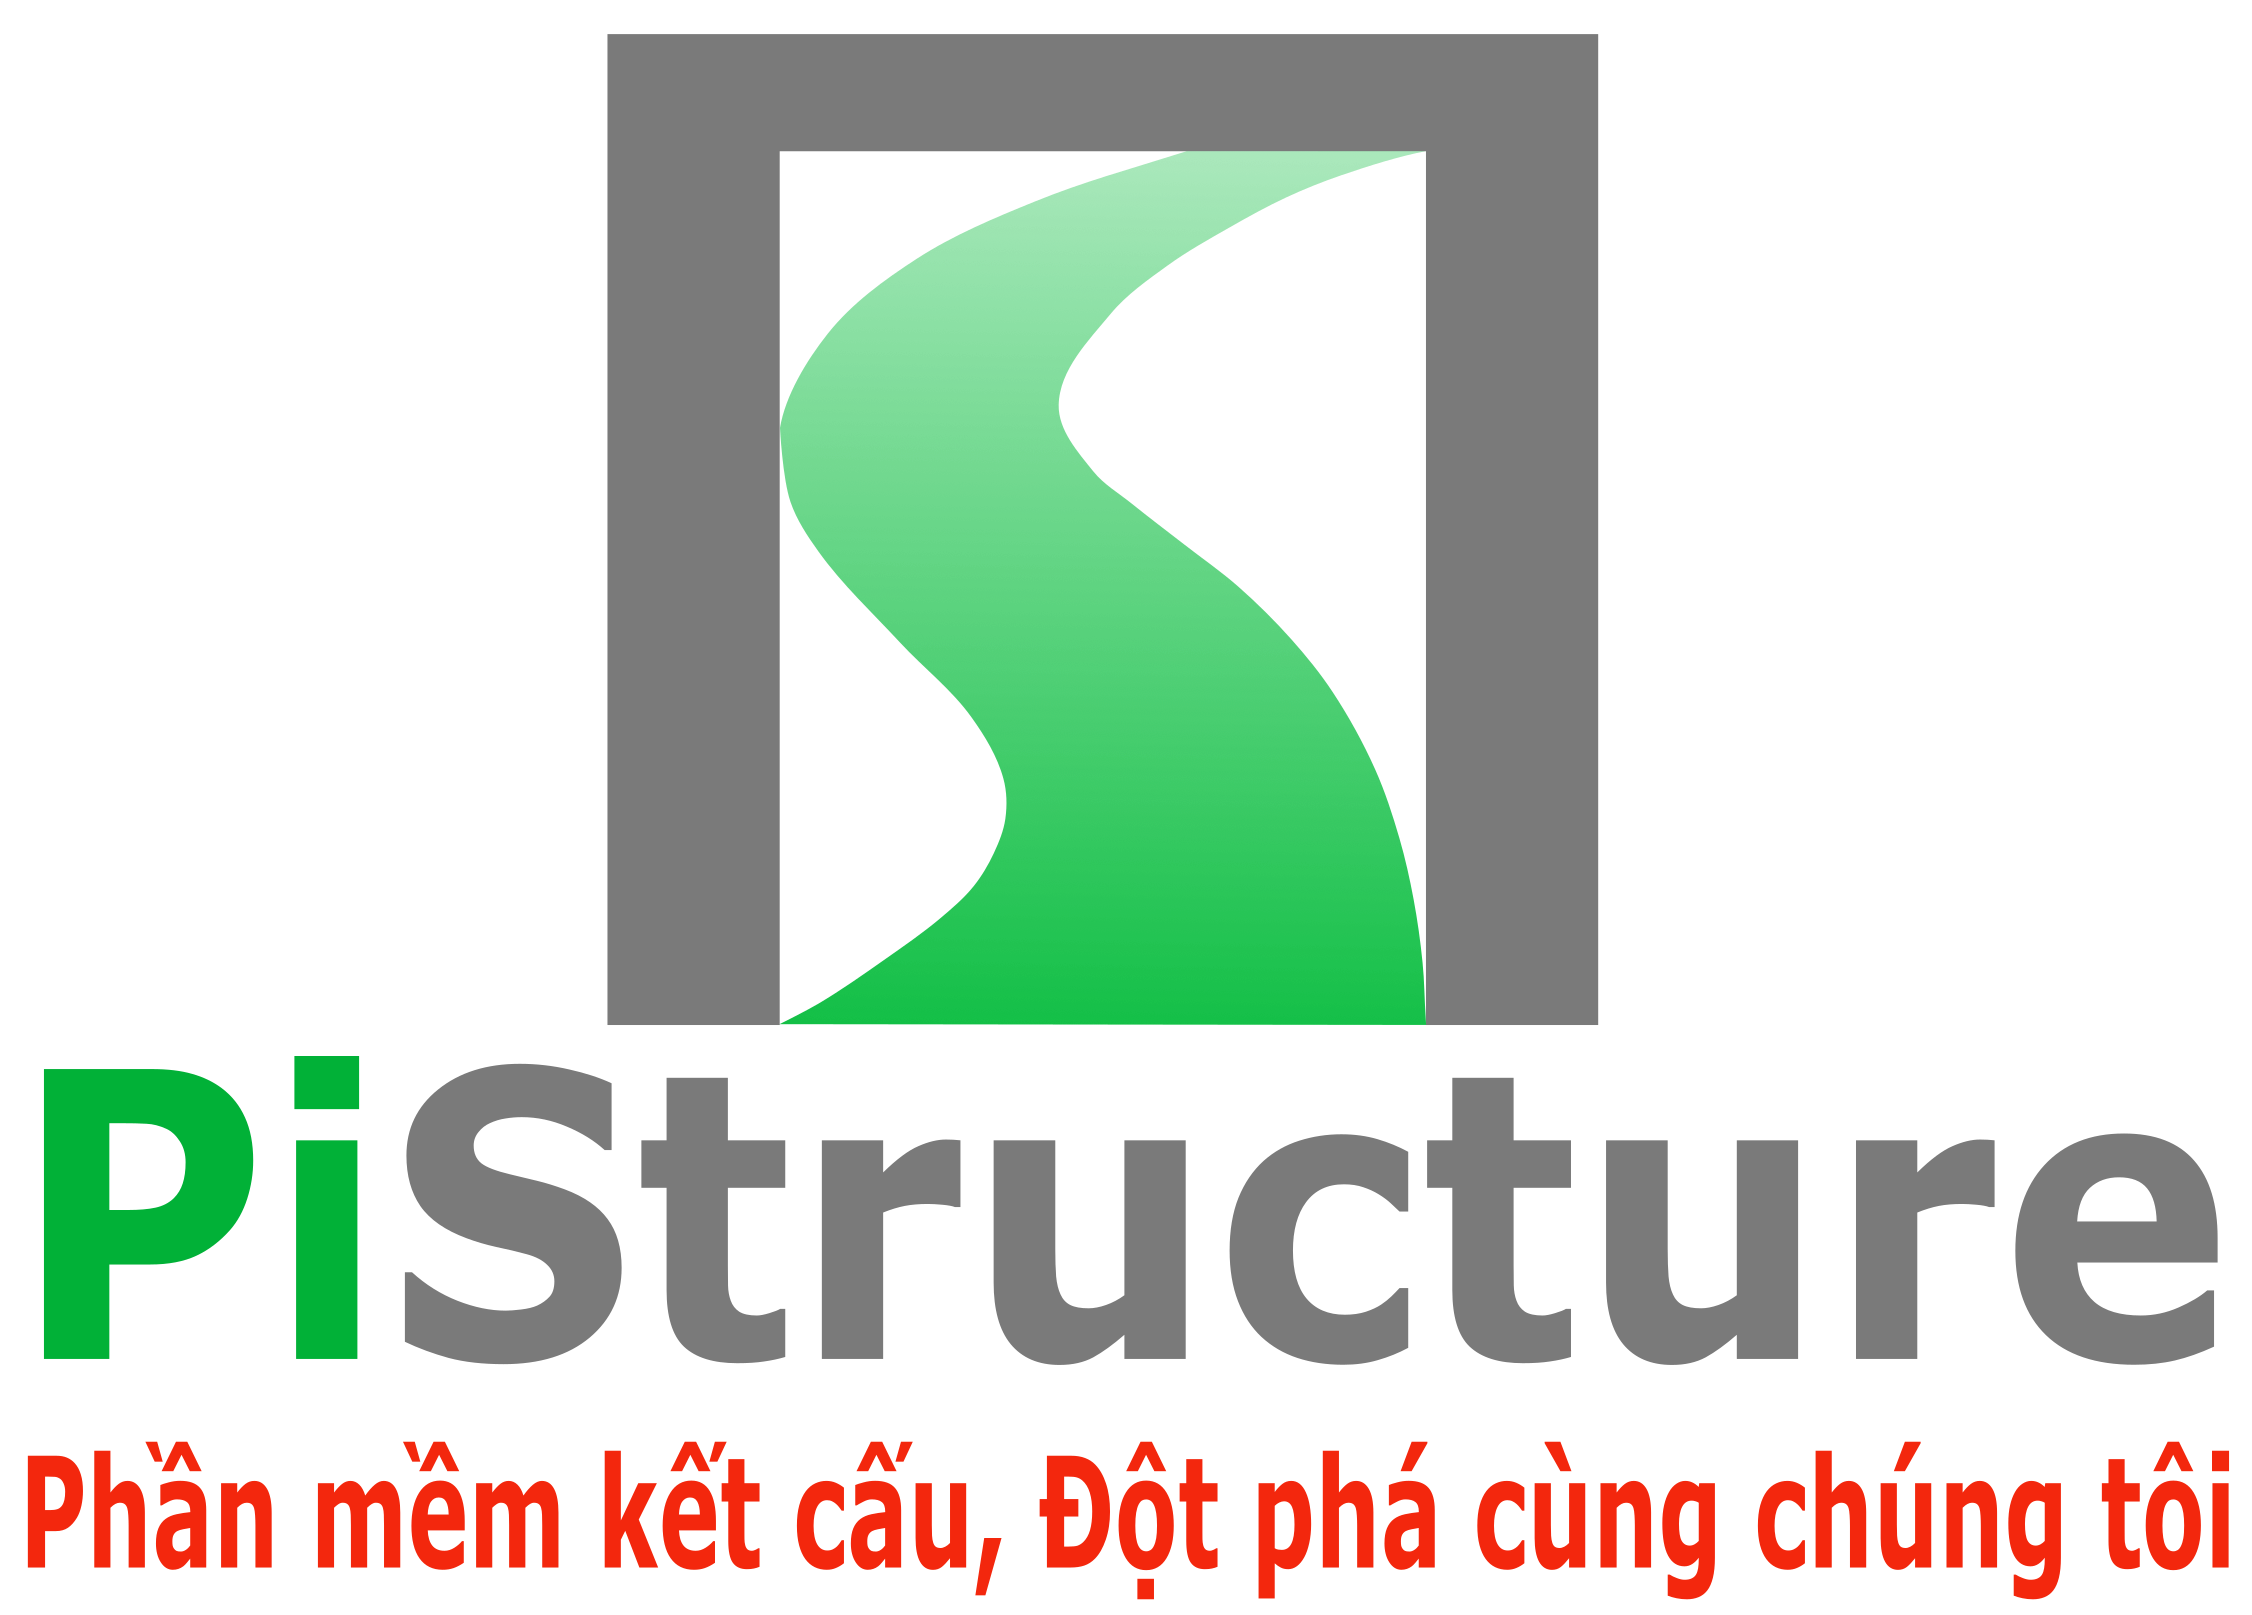 PiStructure.com